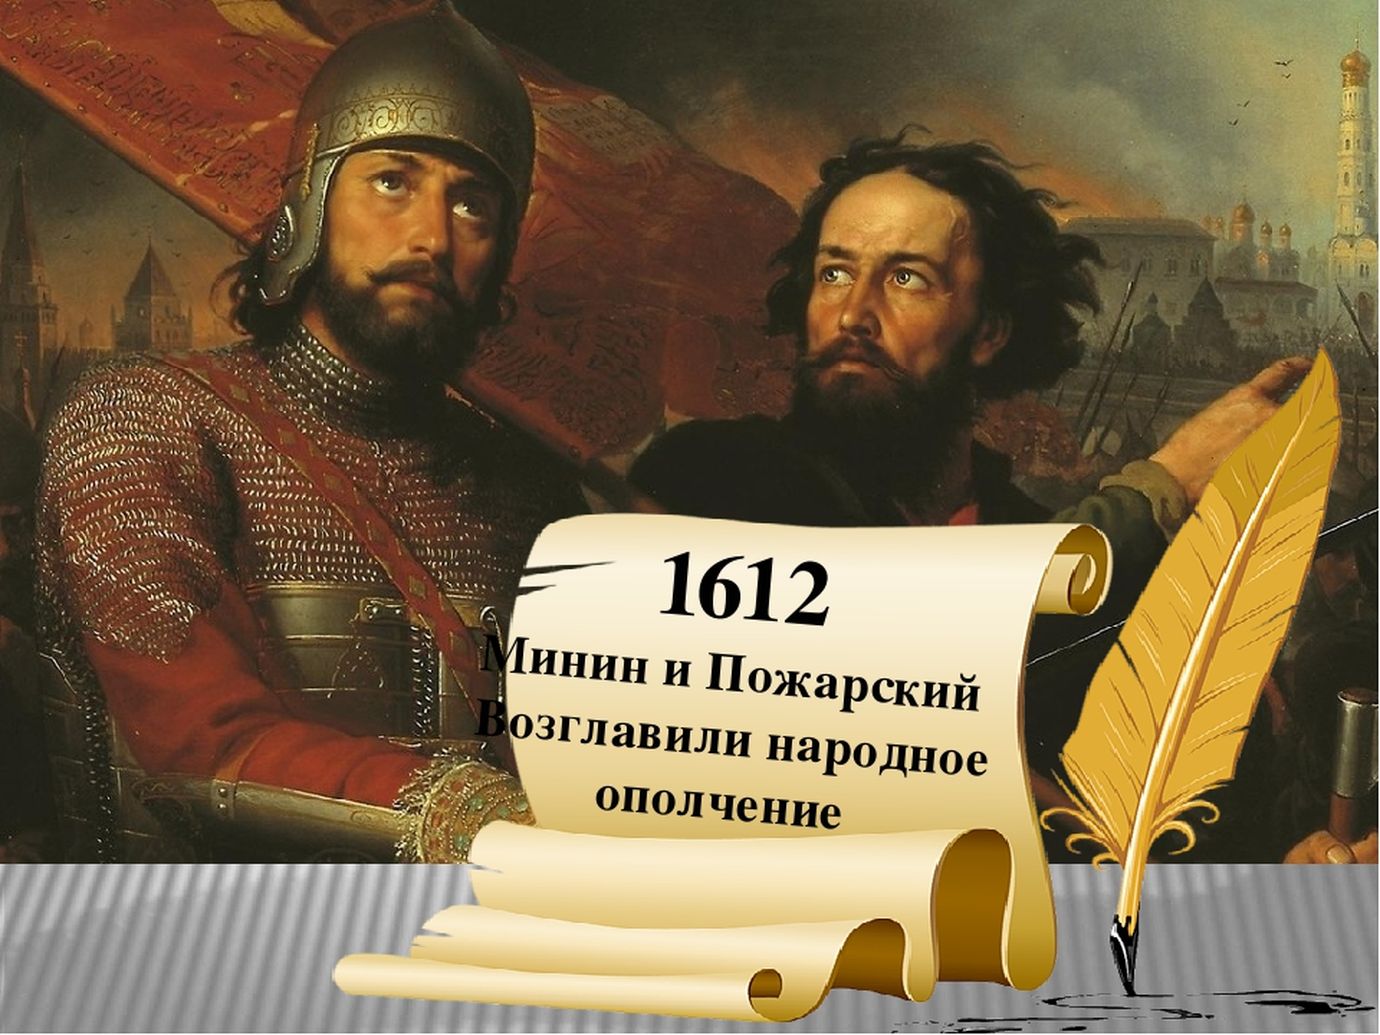 Минин и Пожарский 1612